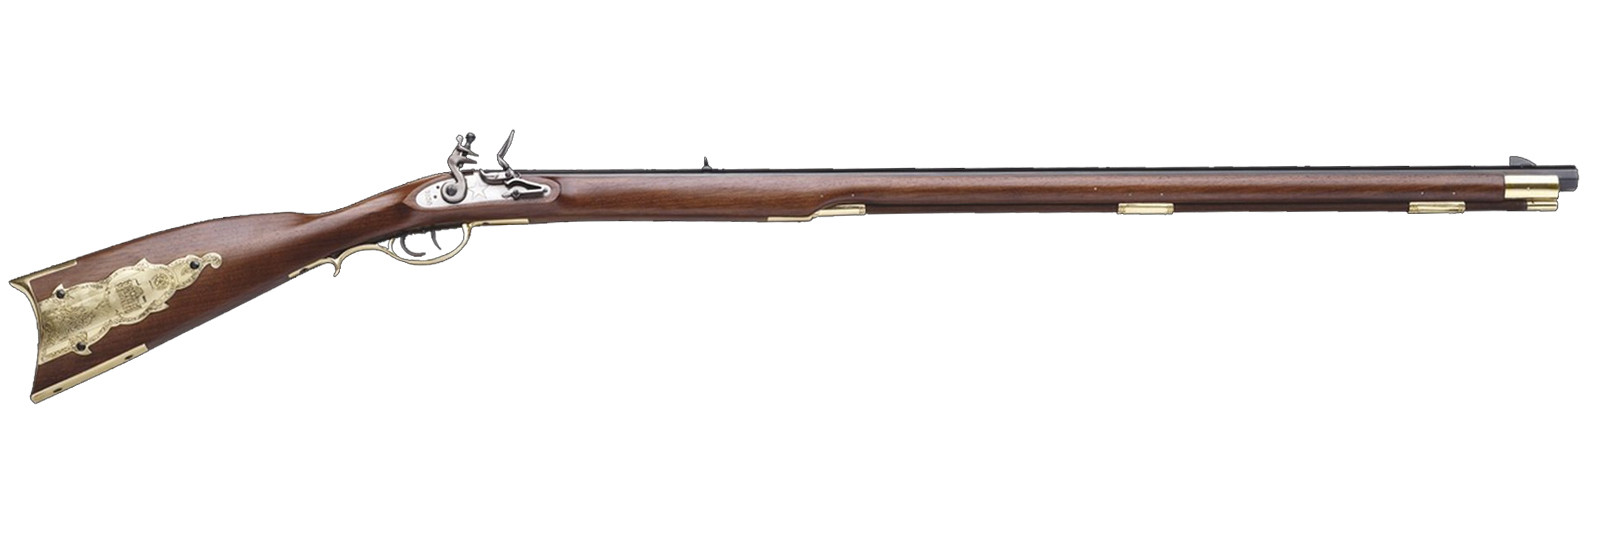 Alamo Rifle flintlock model